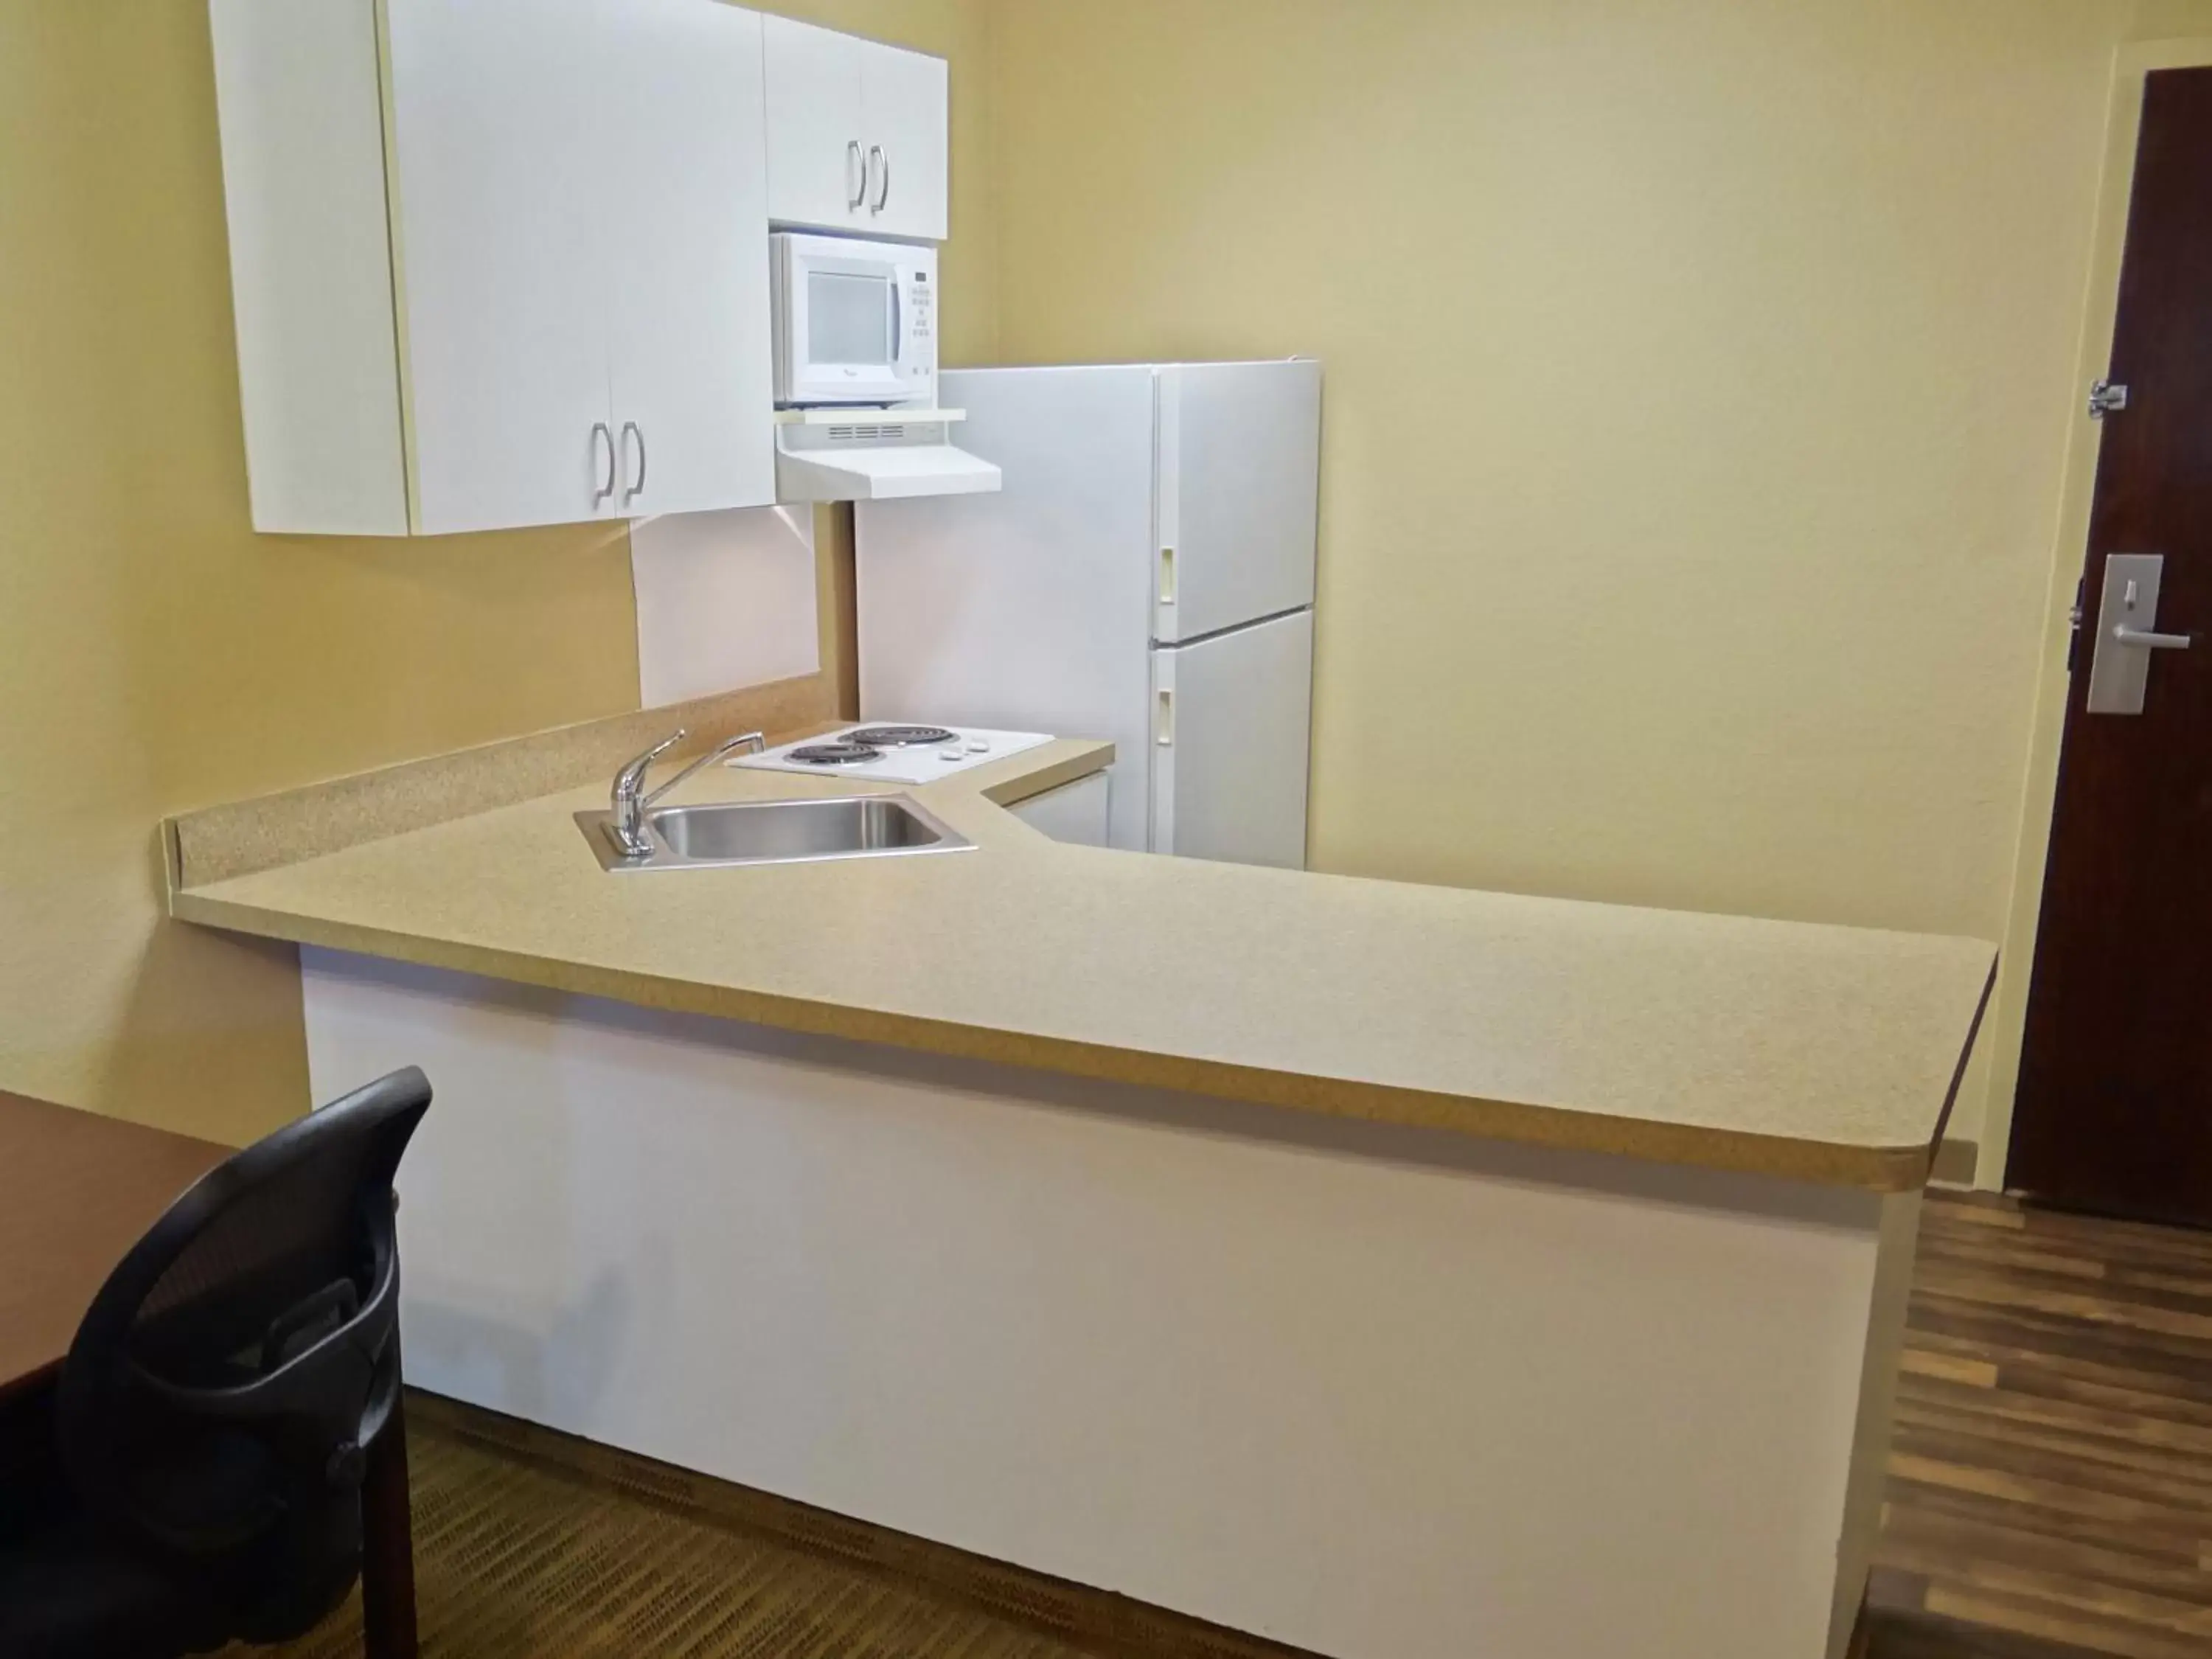 Kitchen or kitchenette, Kitchen/Kitchenette in Extended Stay America Select Suites - Lexington Park - Pax River